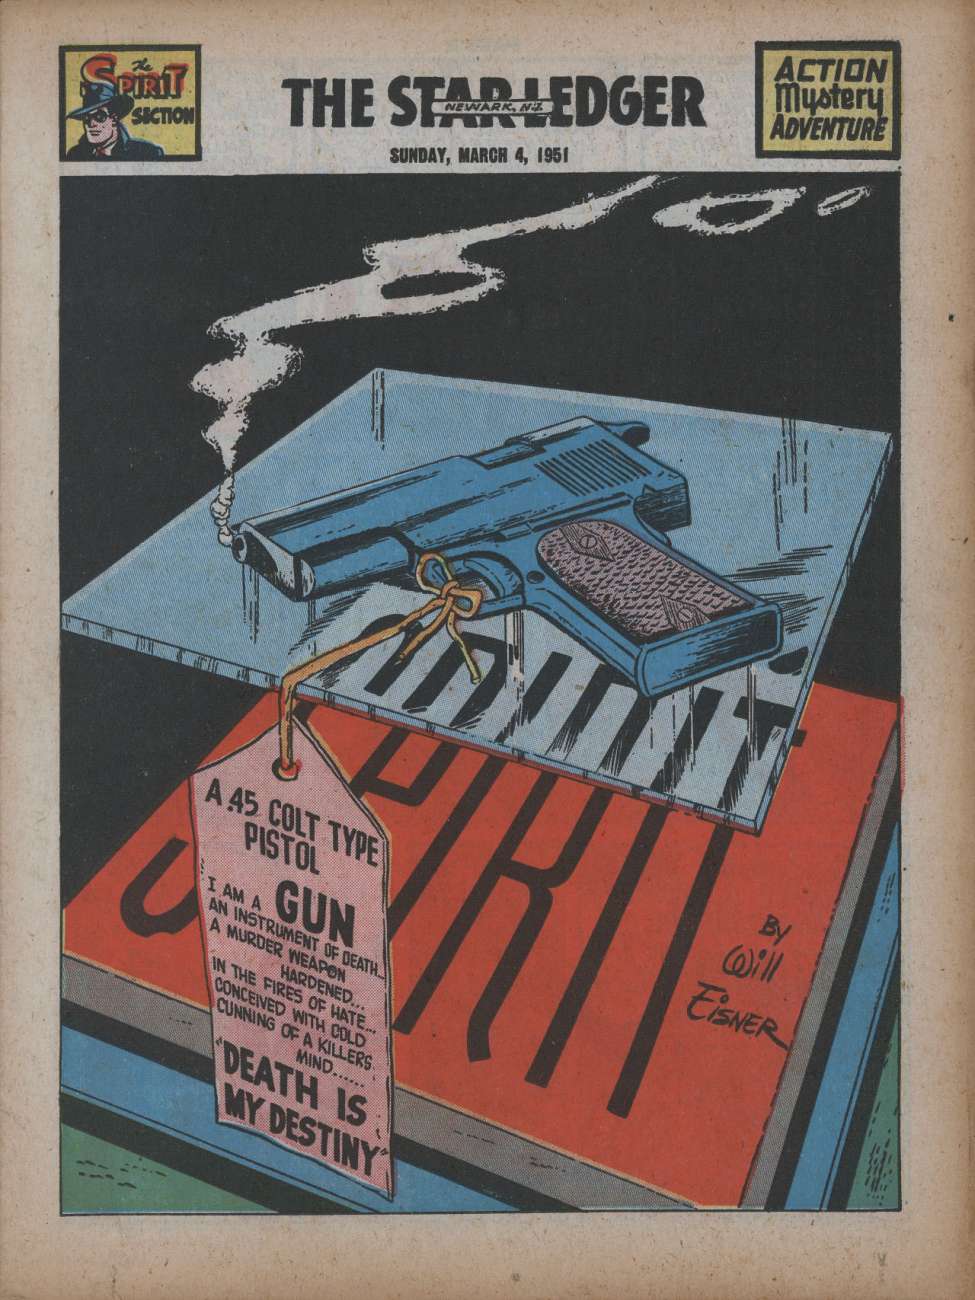 Comic Book Cover For The Spirit (1951-03-04) - Star-Ledger